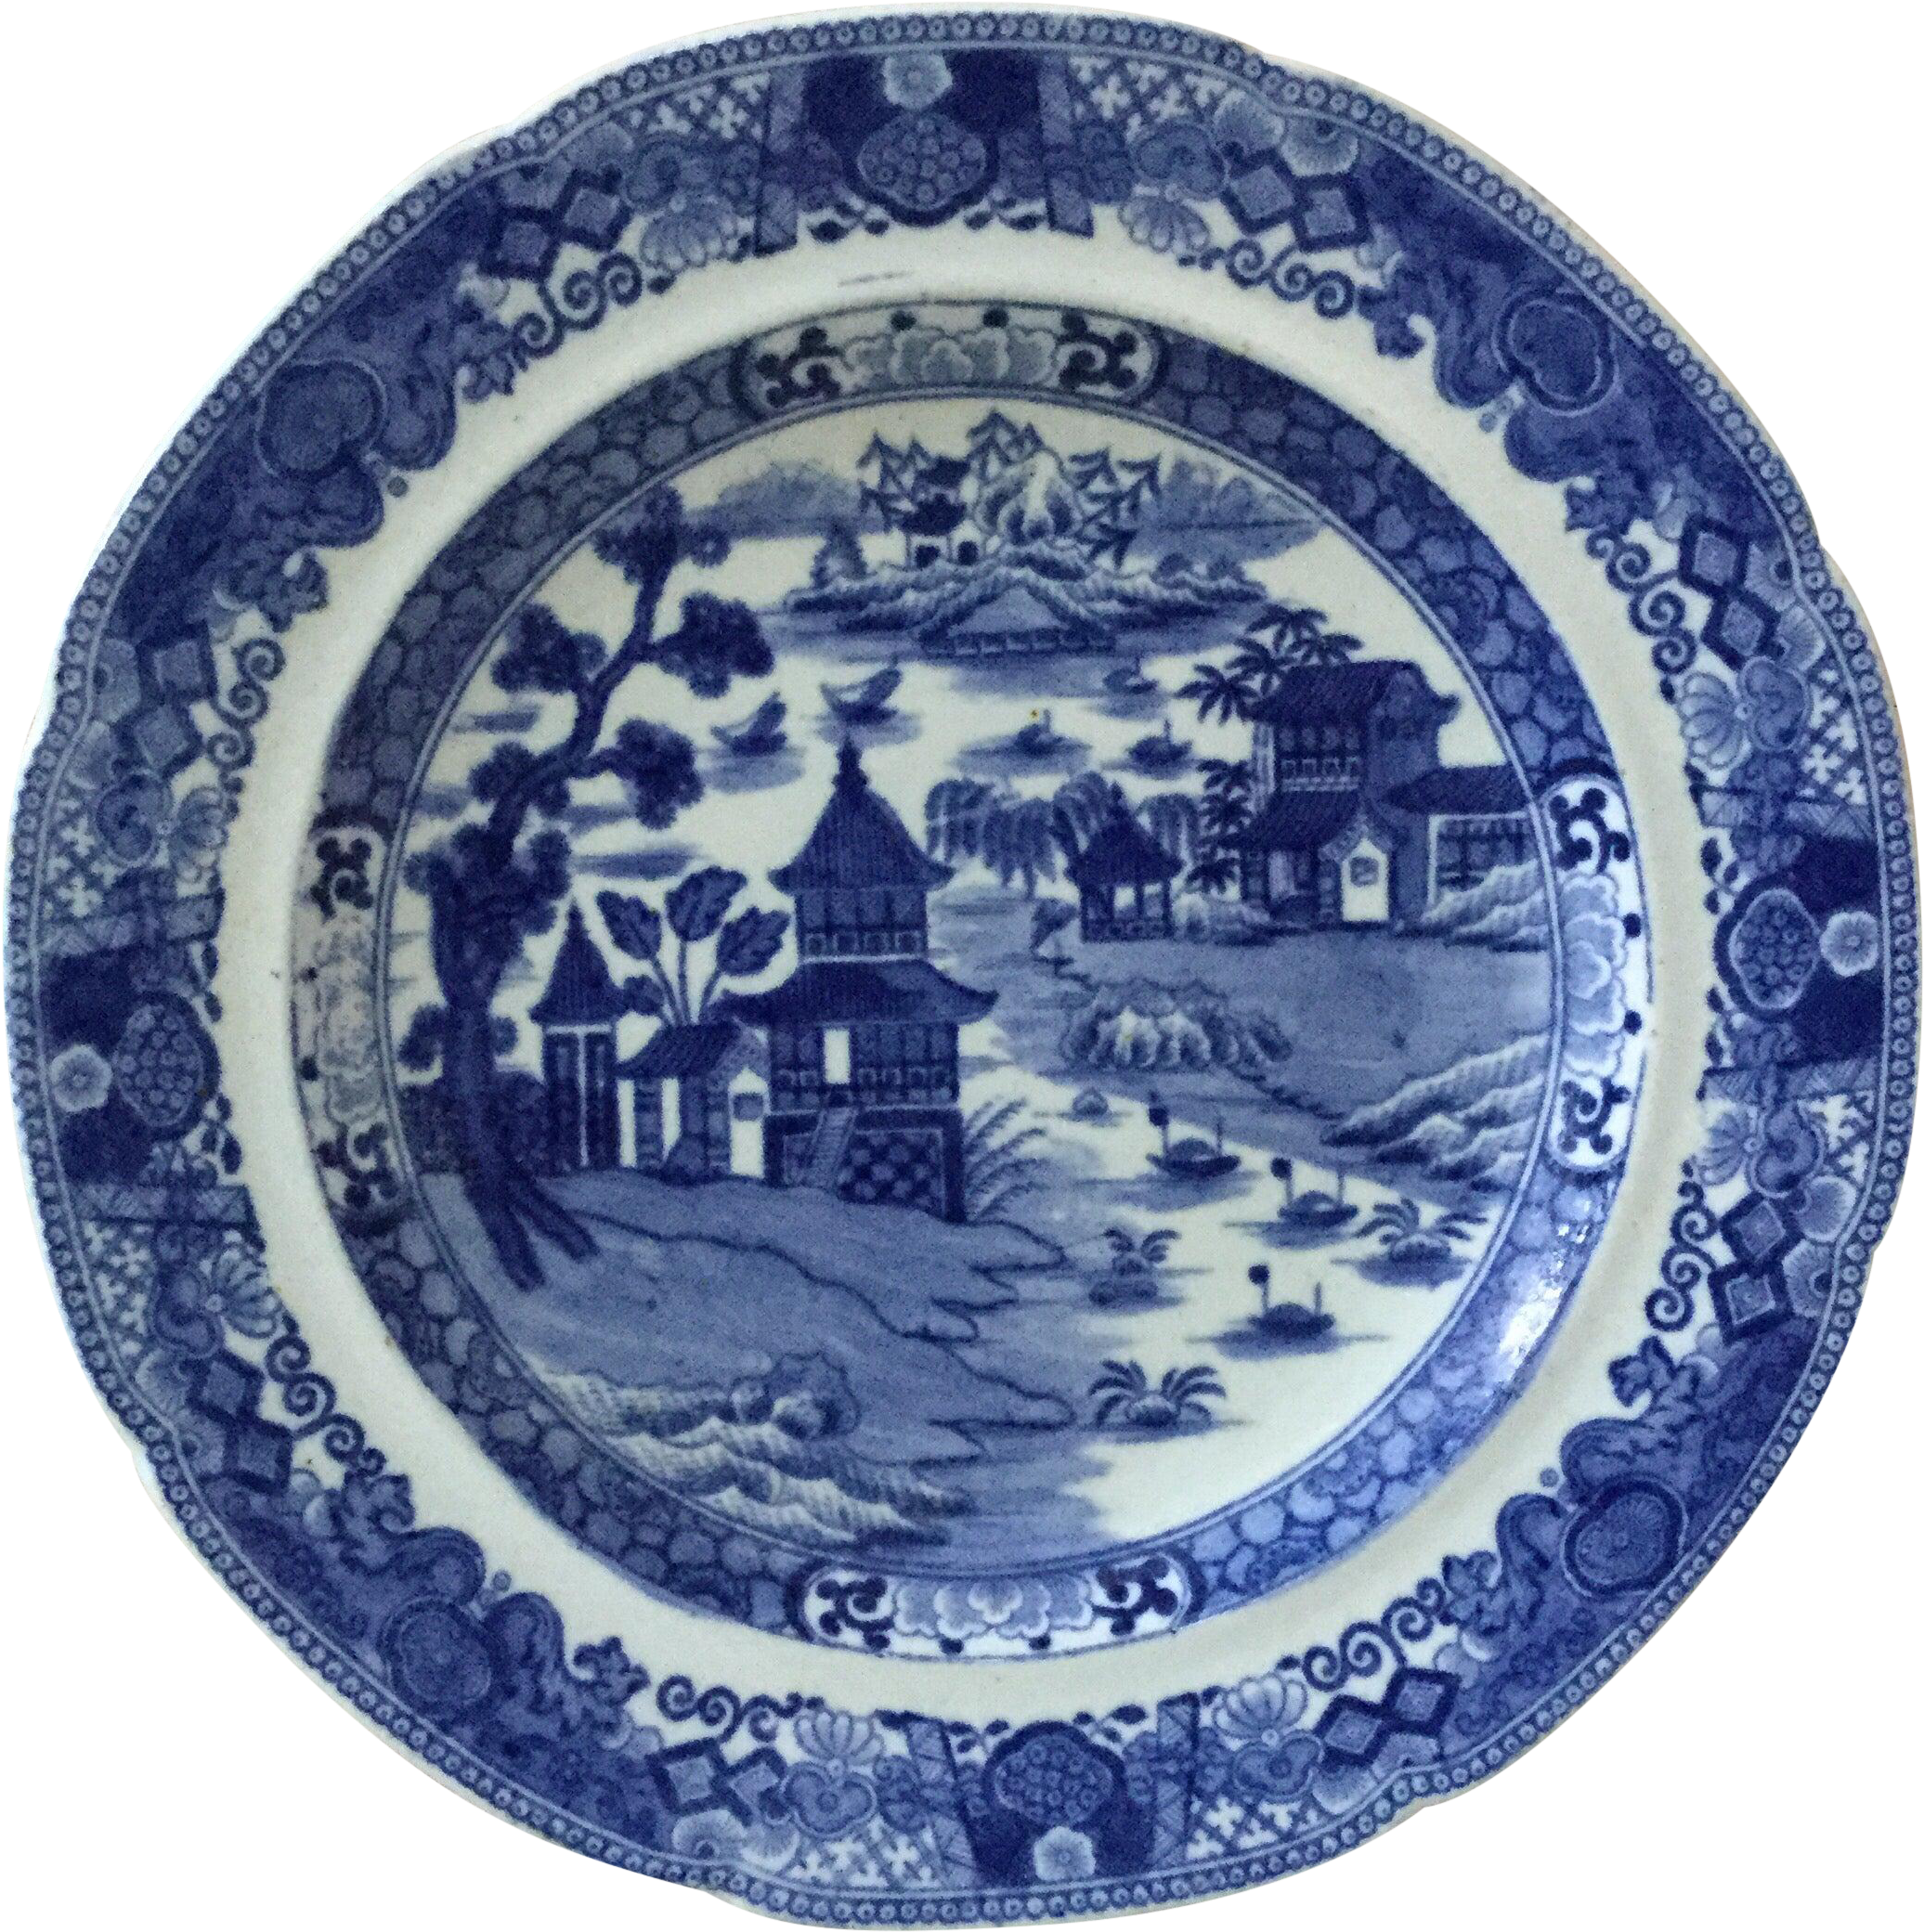 Blaues und weißes Porzellan im britischen chinesischen Stil des 19. Jahrhunderts, blaues und weißes Porzellan